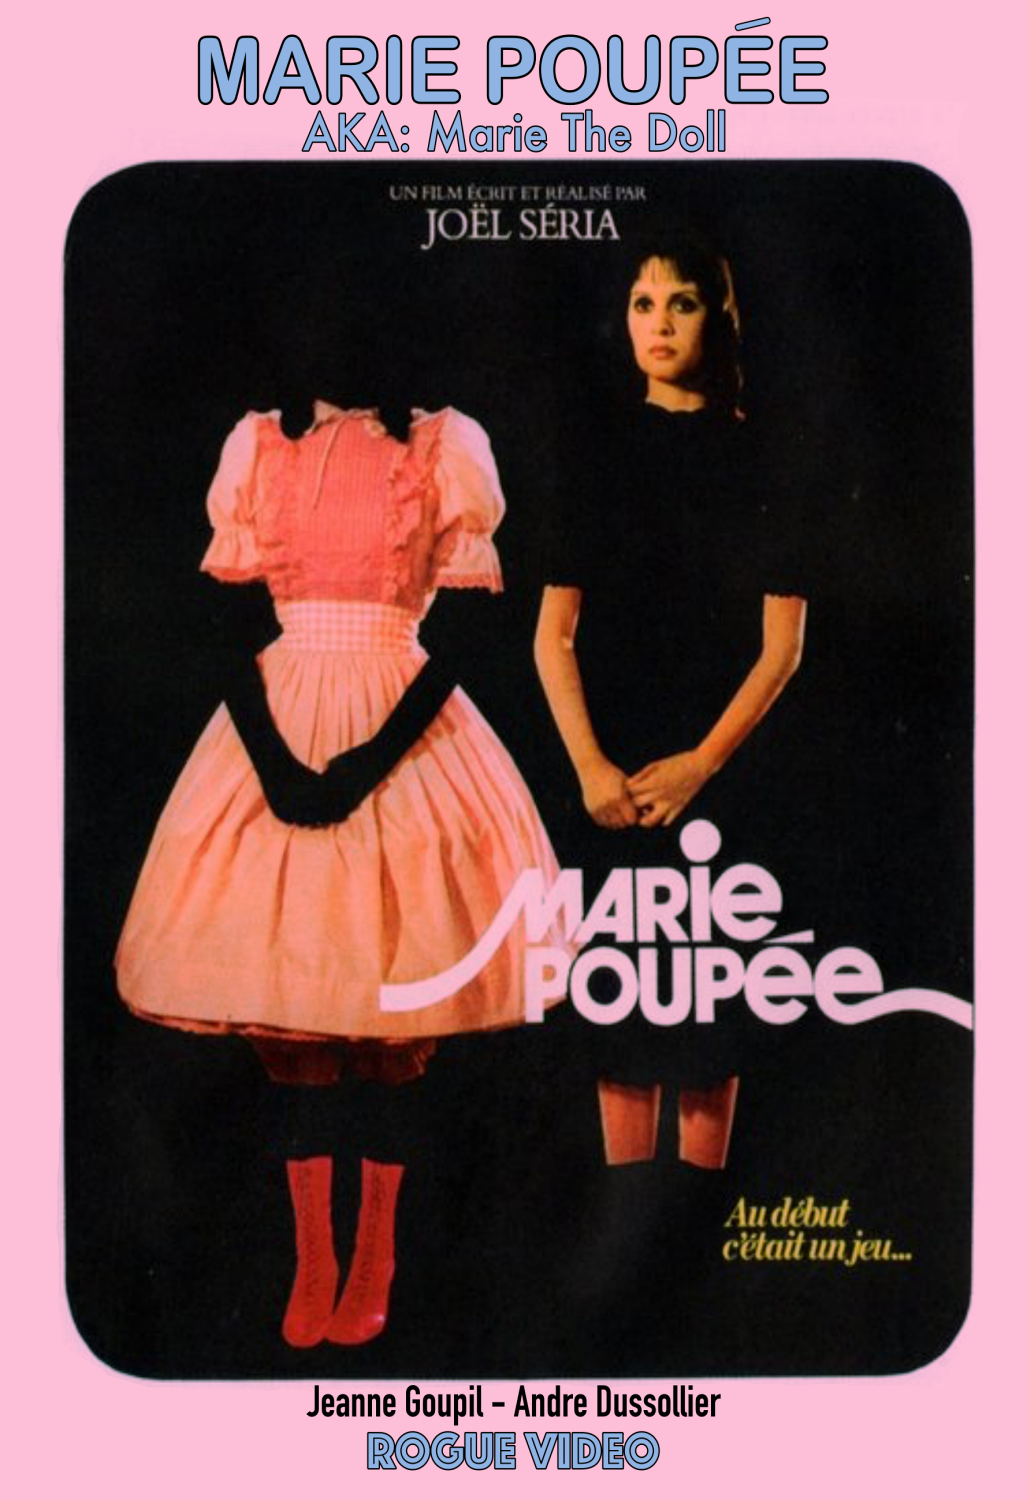 ROGUE VIDEO - rare horror DVDs - cult films & fiction "MARIE POUPEE" (1976)